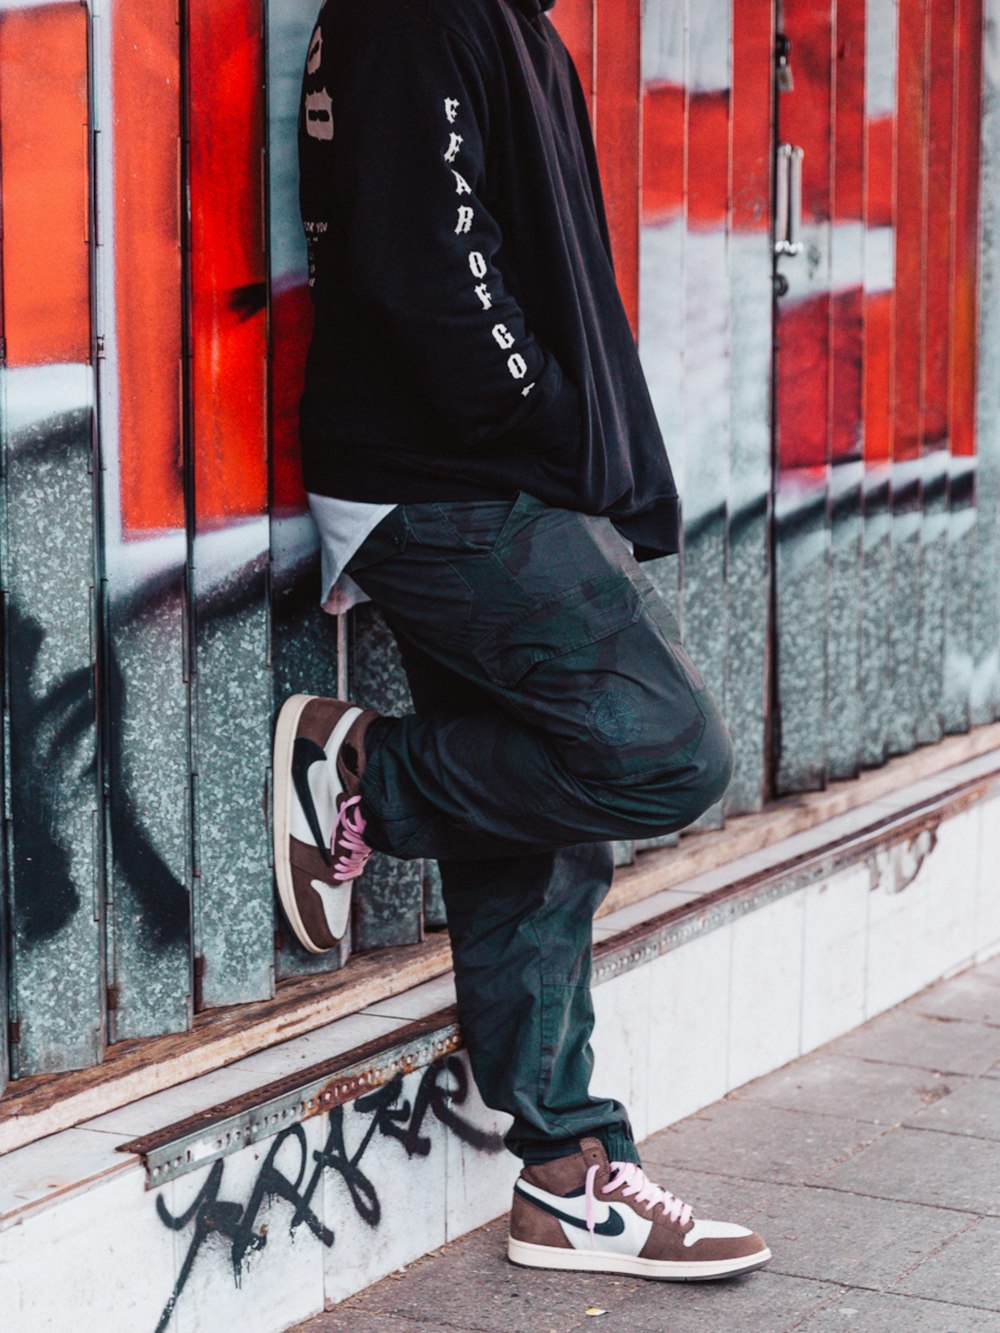 homme en chaussures de basket nike noir et blanc et pantalon noir photo –  Photo Avant jc Gratuite sur Unsplash